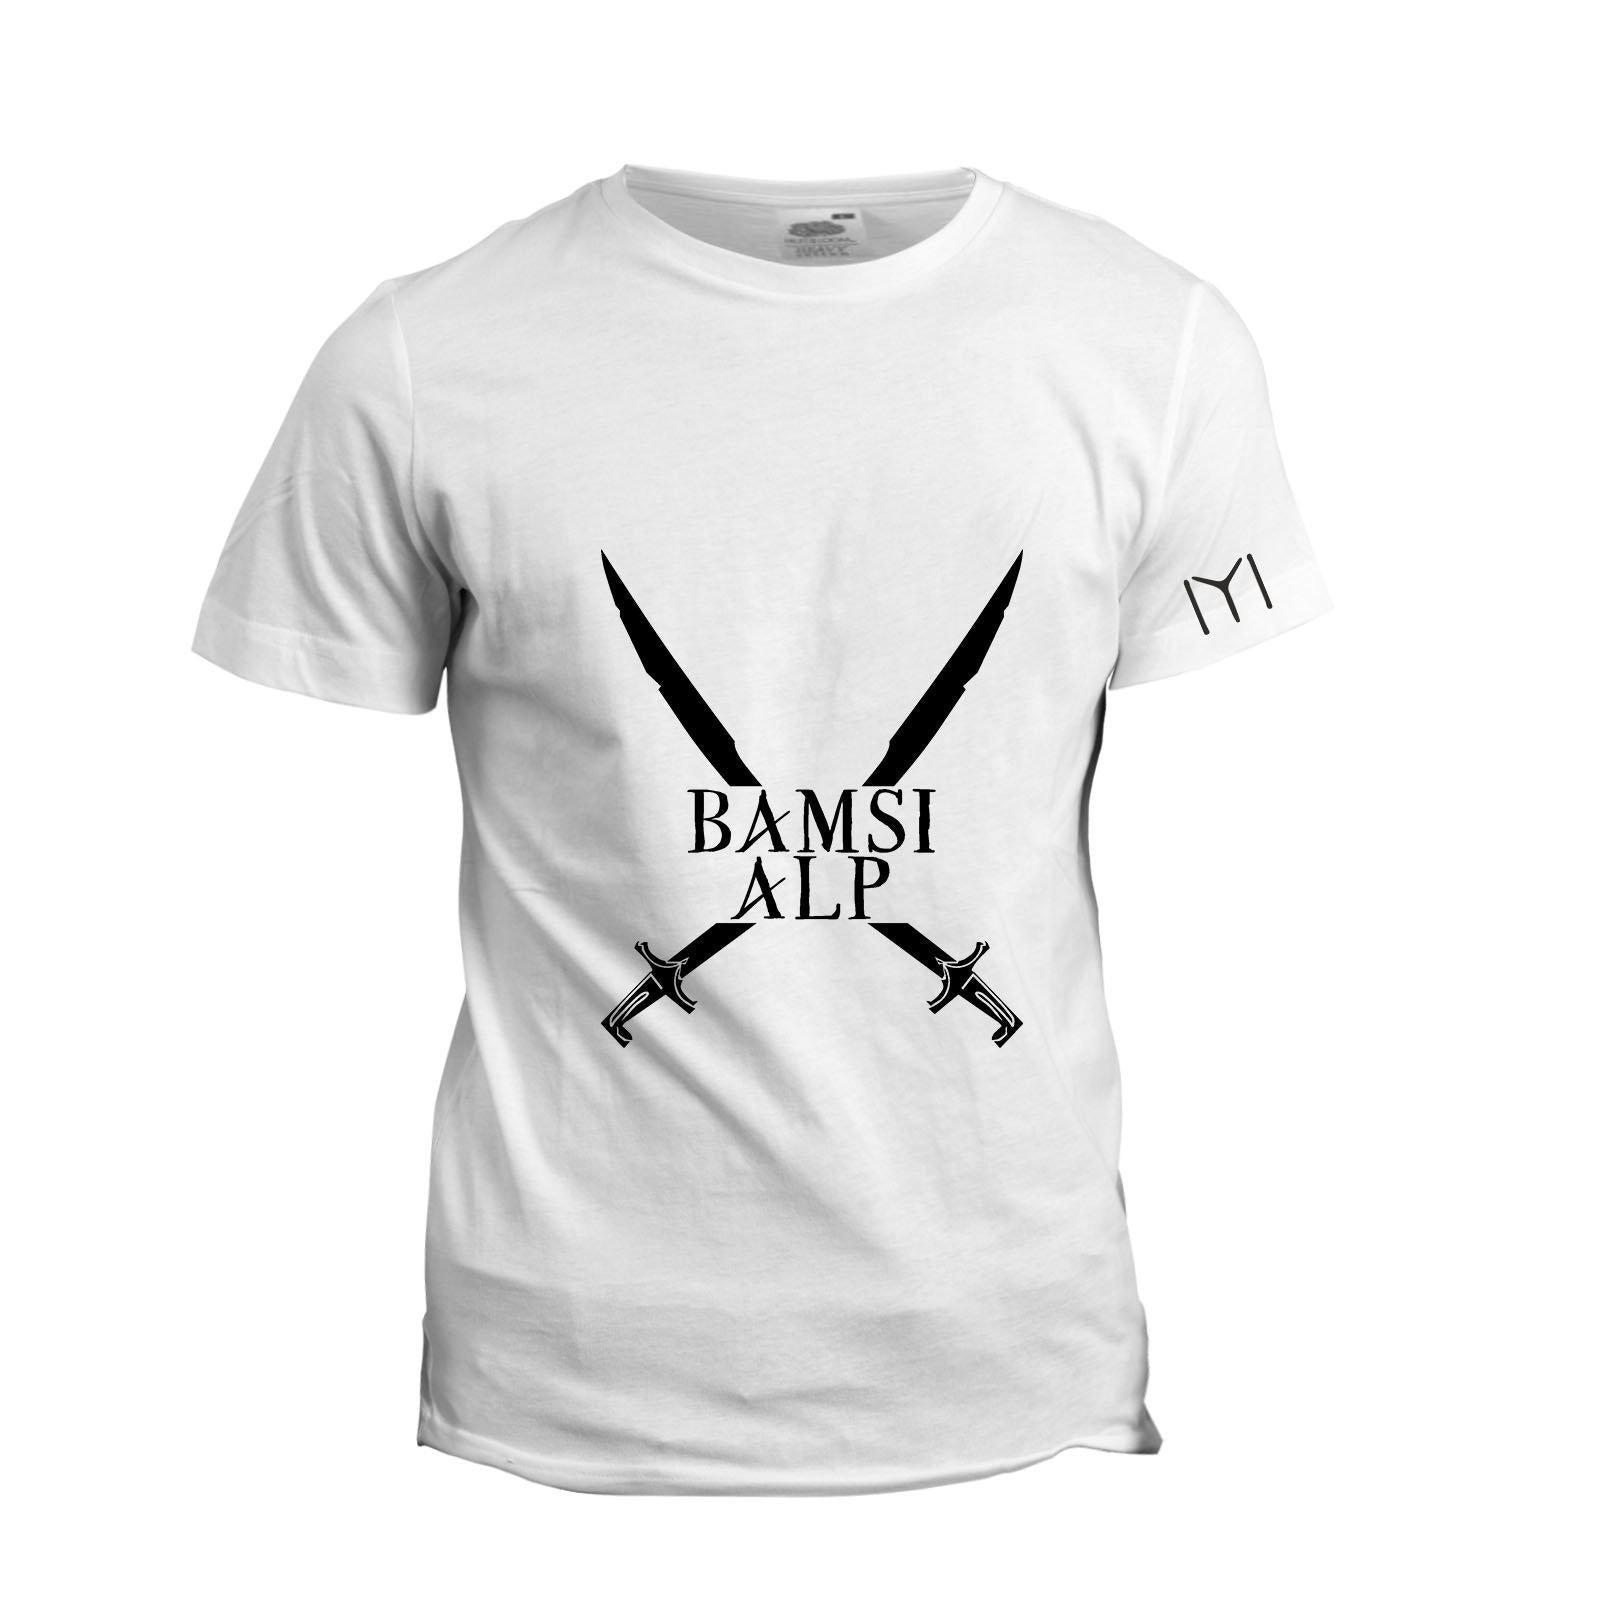 Kayi Men's Bamsi Alp T-Shirt - KAYILAR PAZAR